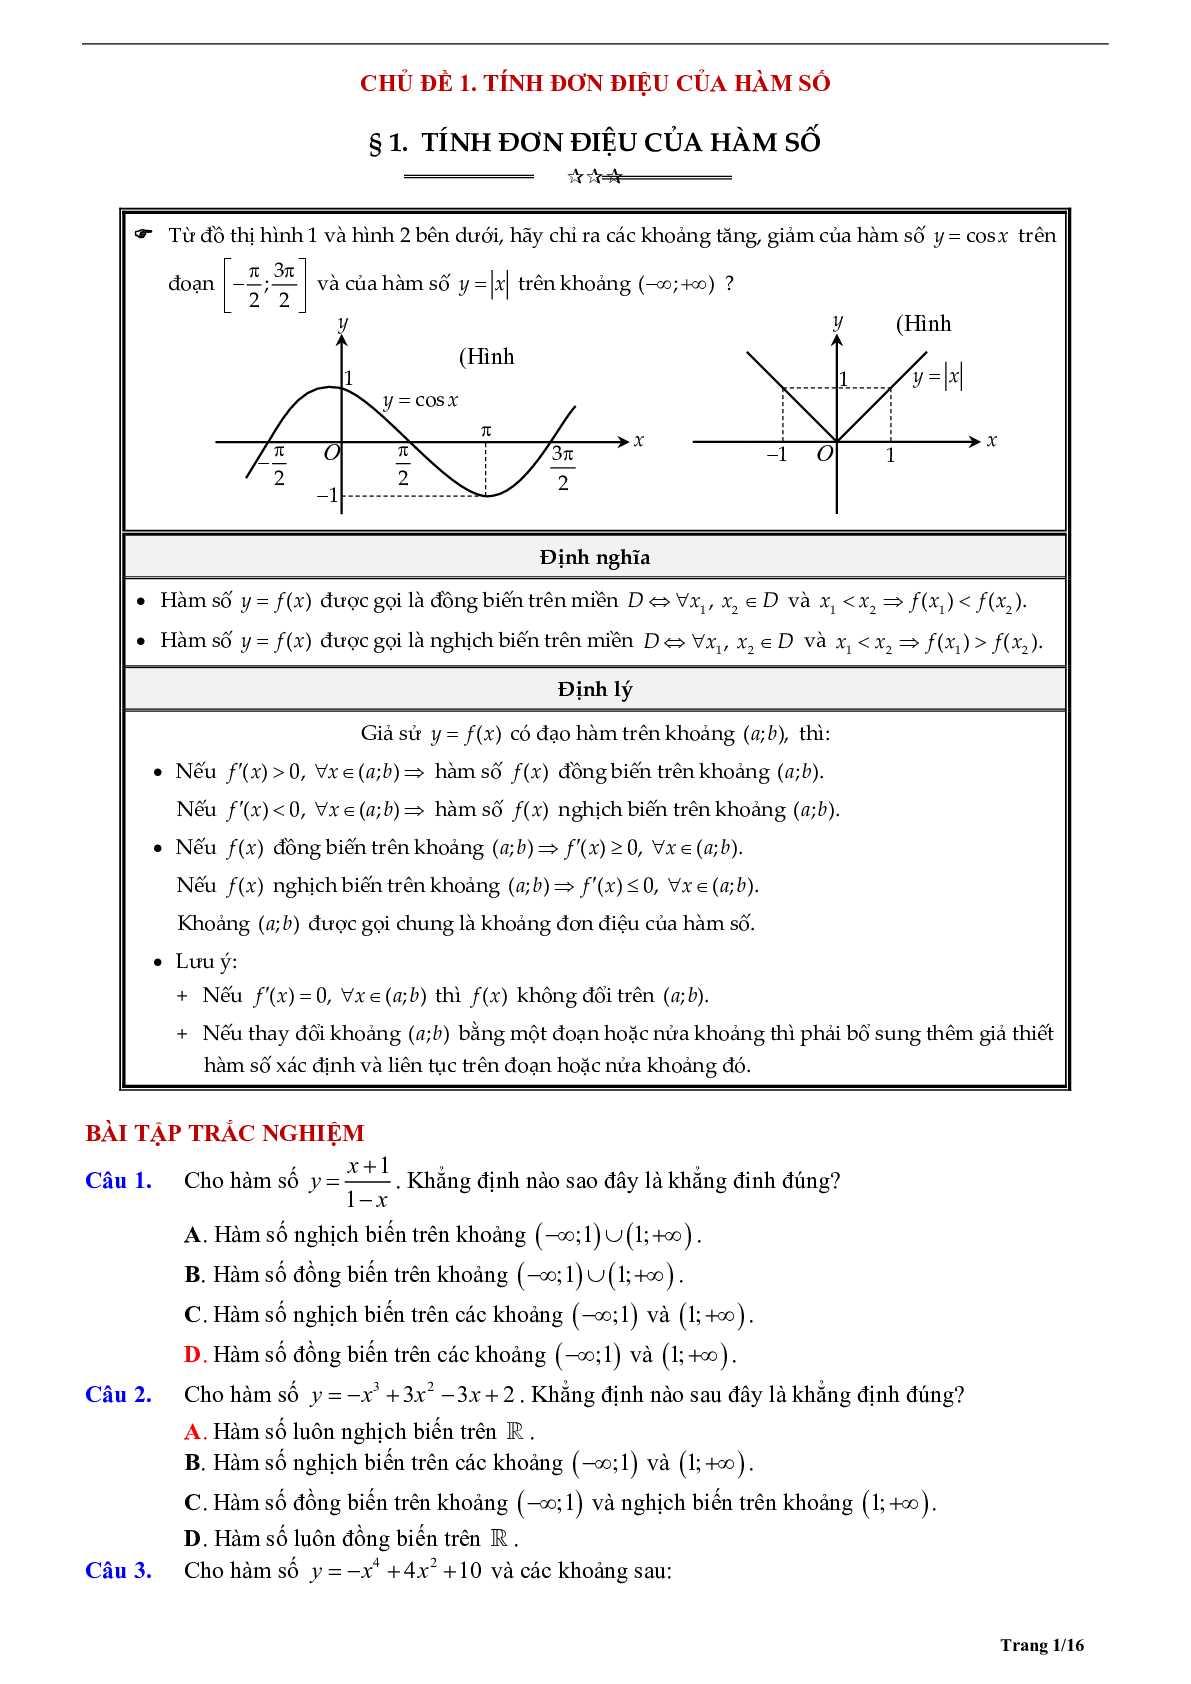 Tóm tắt lý thuyết và bài tập trắc nghiệm về tính đơn điệu của hàm số (trang 1)